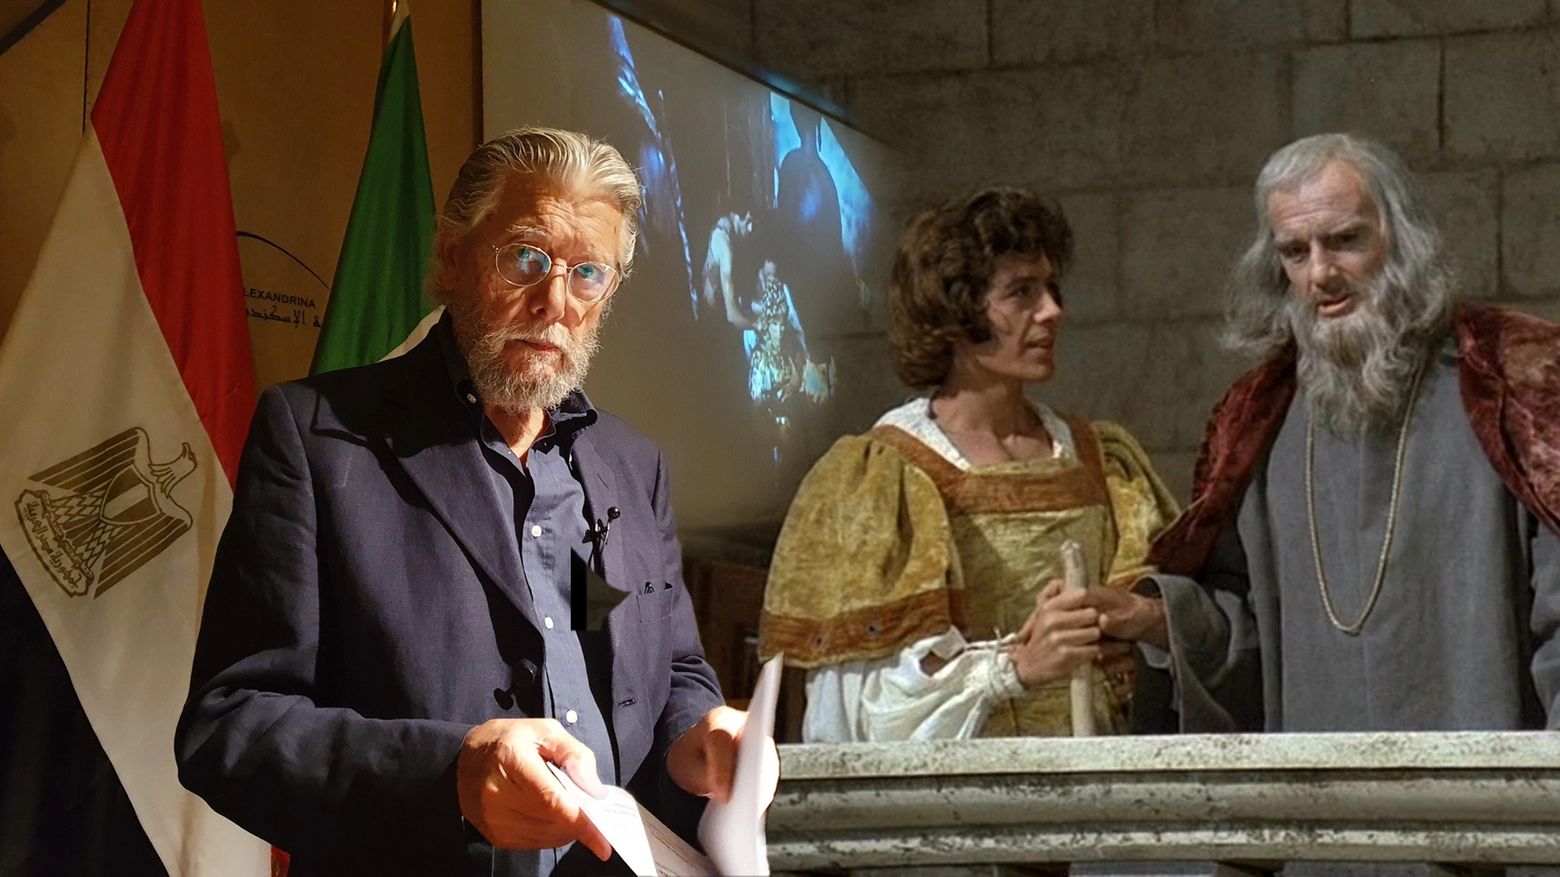 Carlo Simoni ad Alessandria d'Egitto al Simposium su Leonardo da Vinci e nella serie Tv